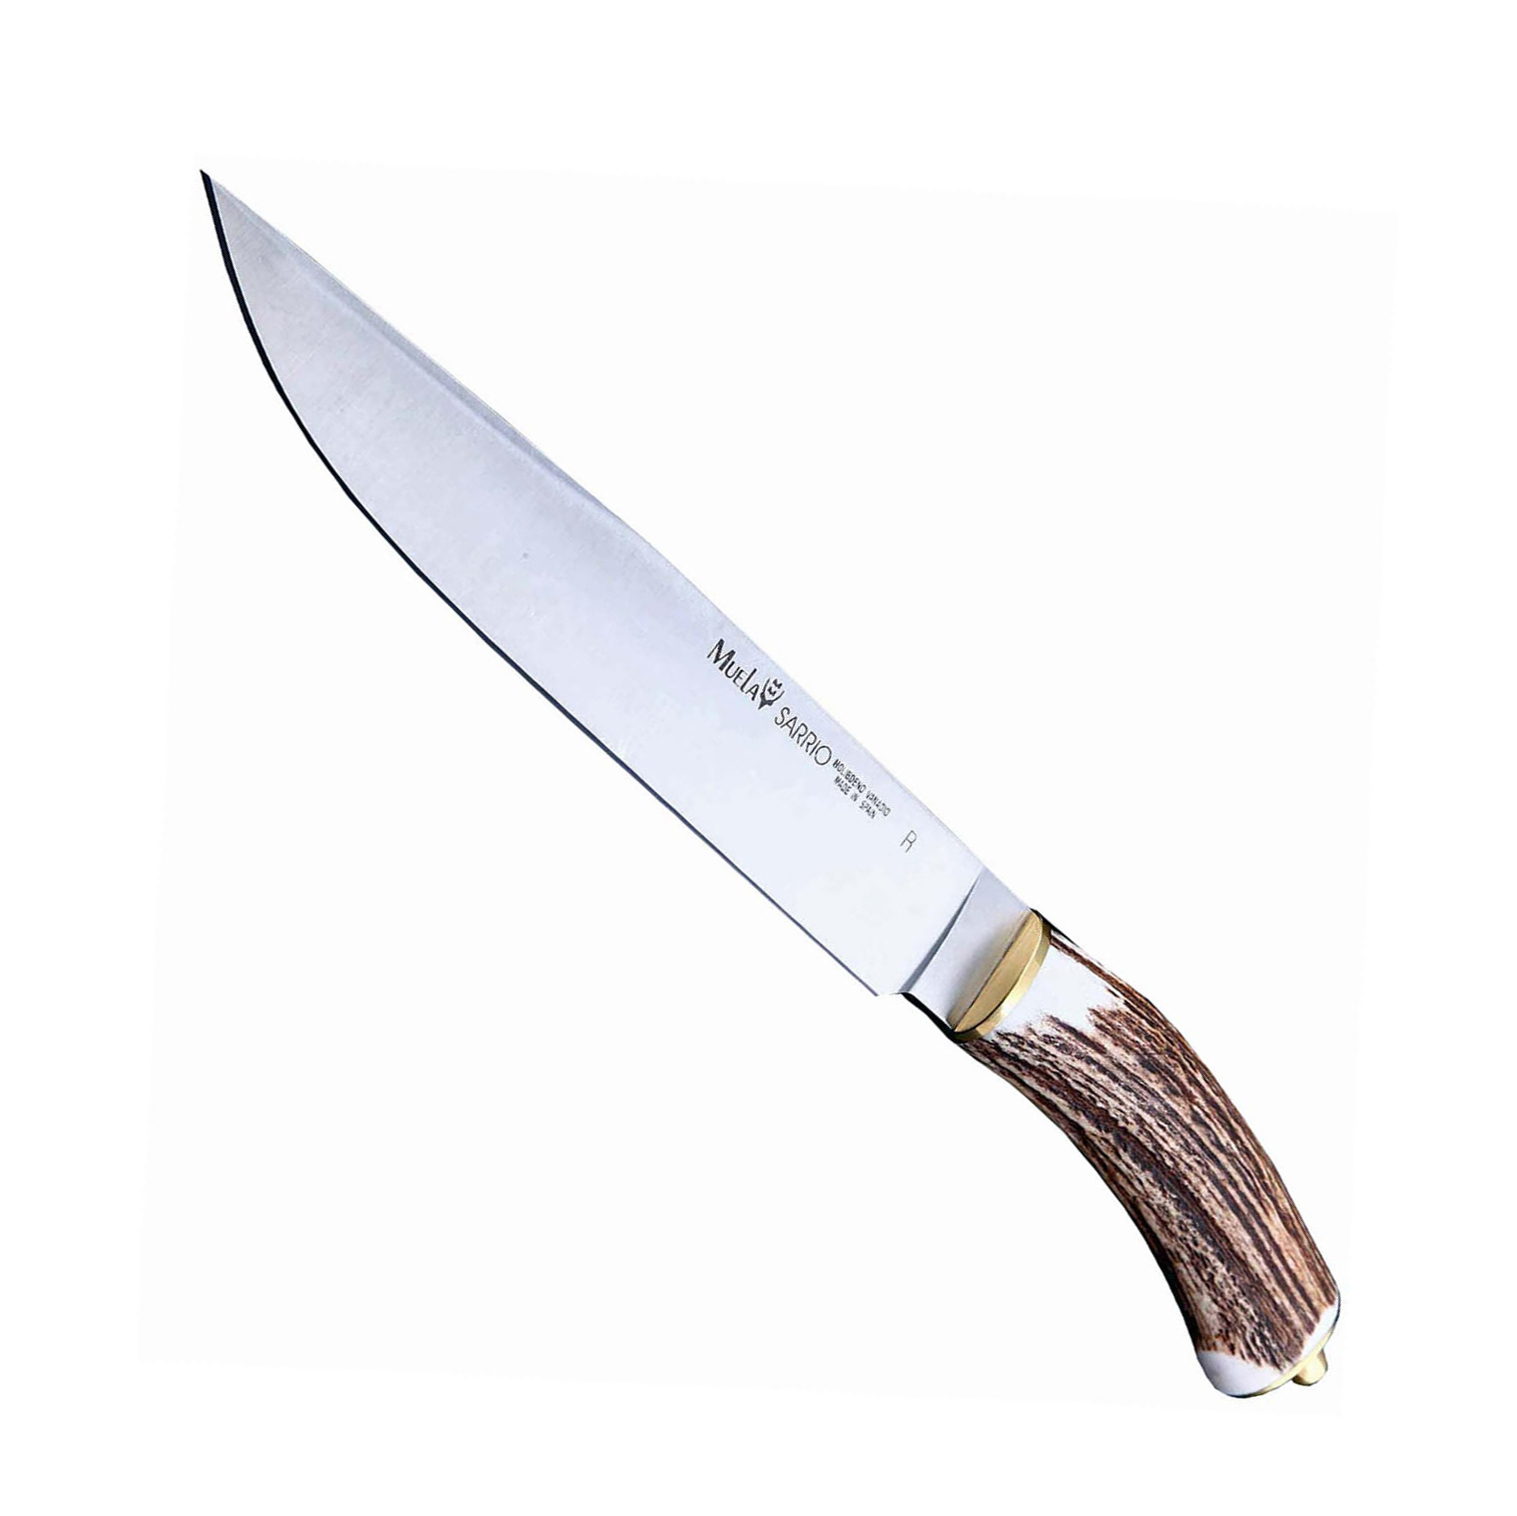 фото Нож с фиксированным клинком muela sarrio, сталь x50crmov15, рукоять олений рог, коричневый